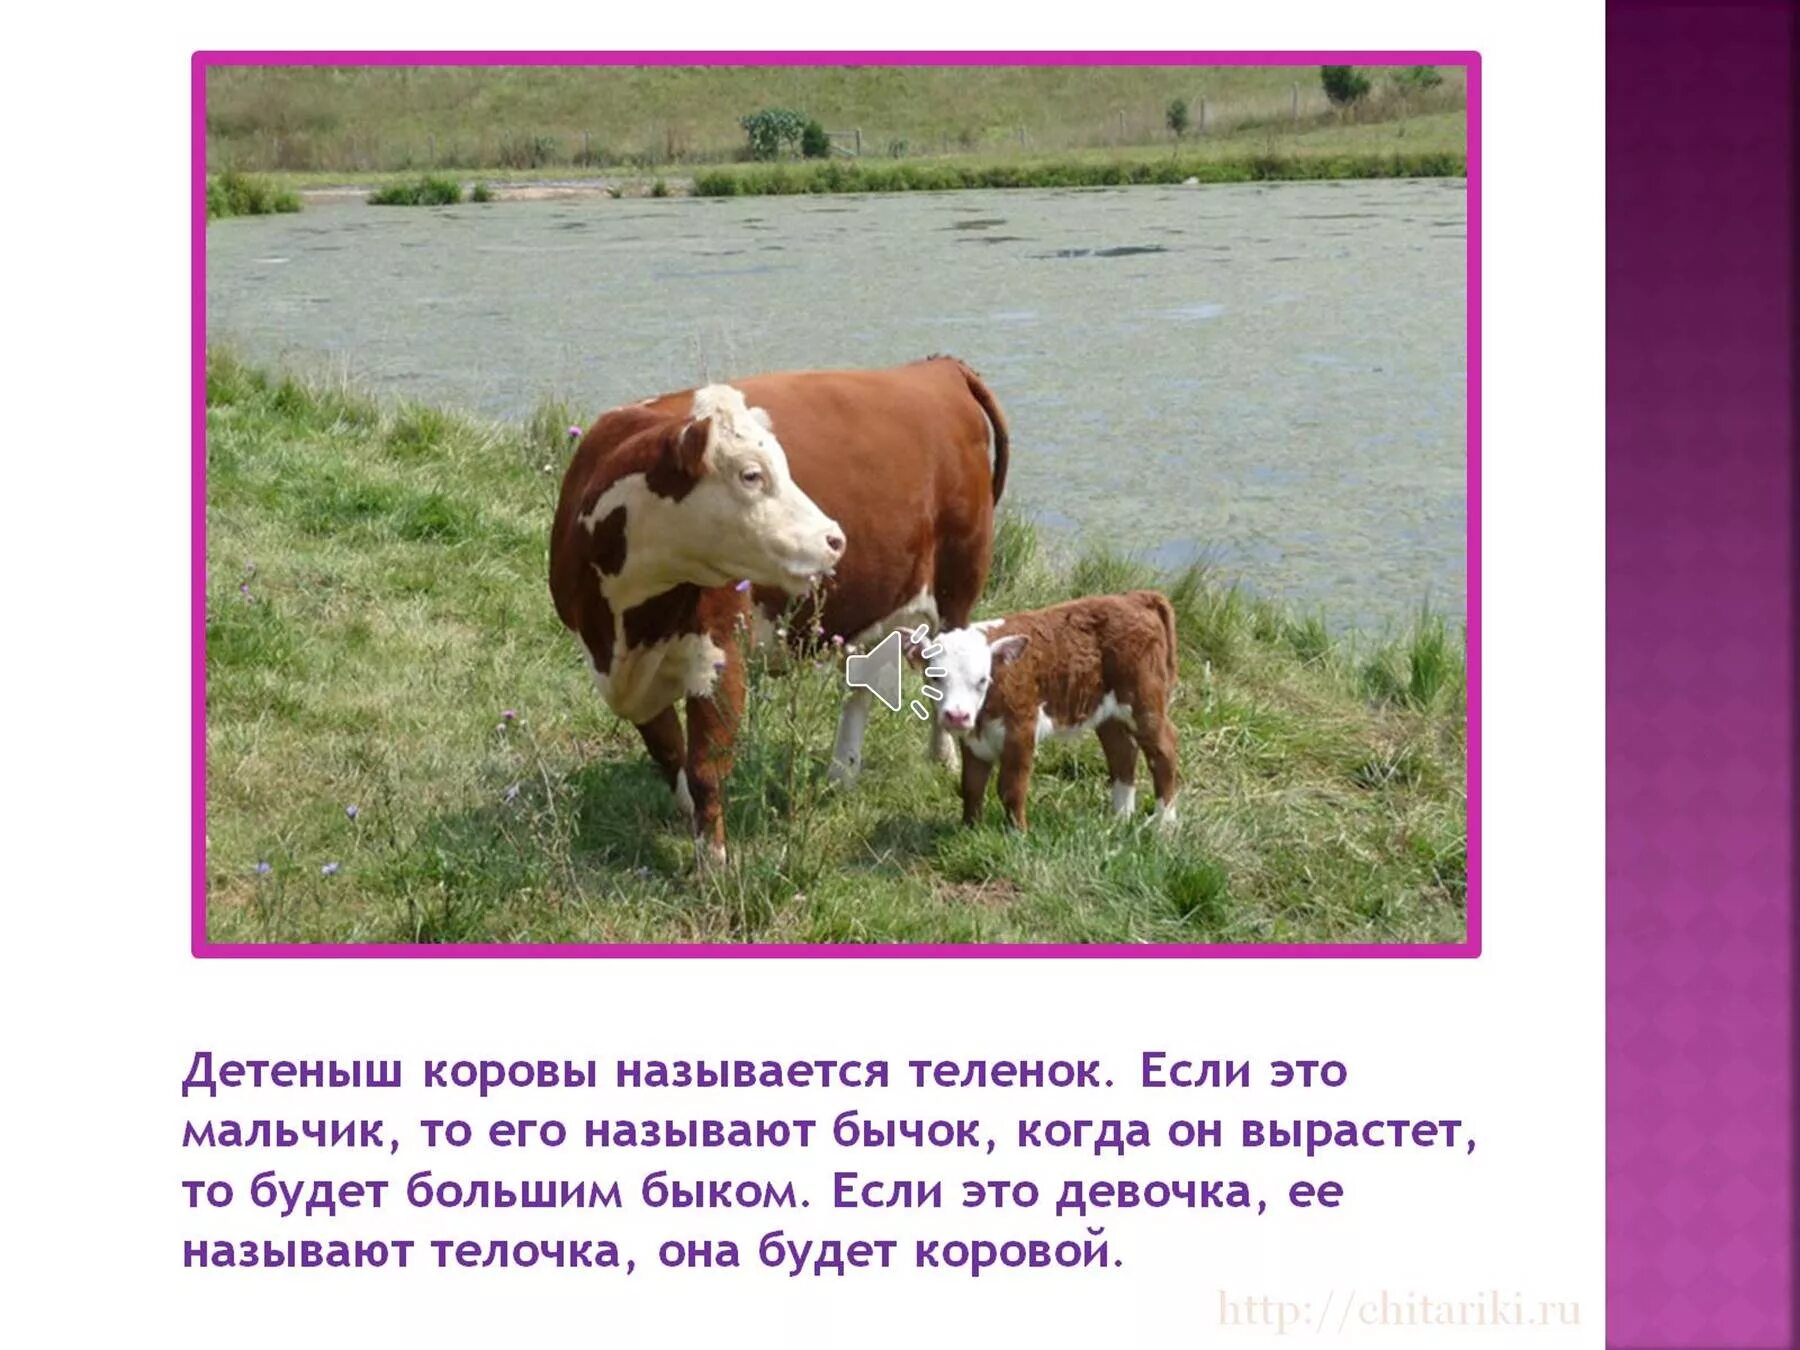 Корова домашнее животное описание. Домашние животные корова презентация. Корова для презентации. Презентация на тему корова домашнее животное.